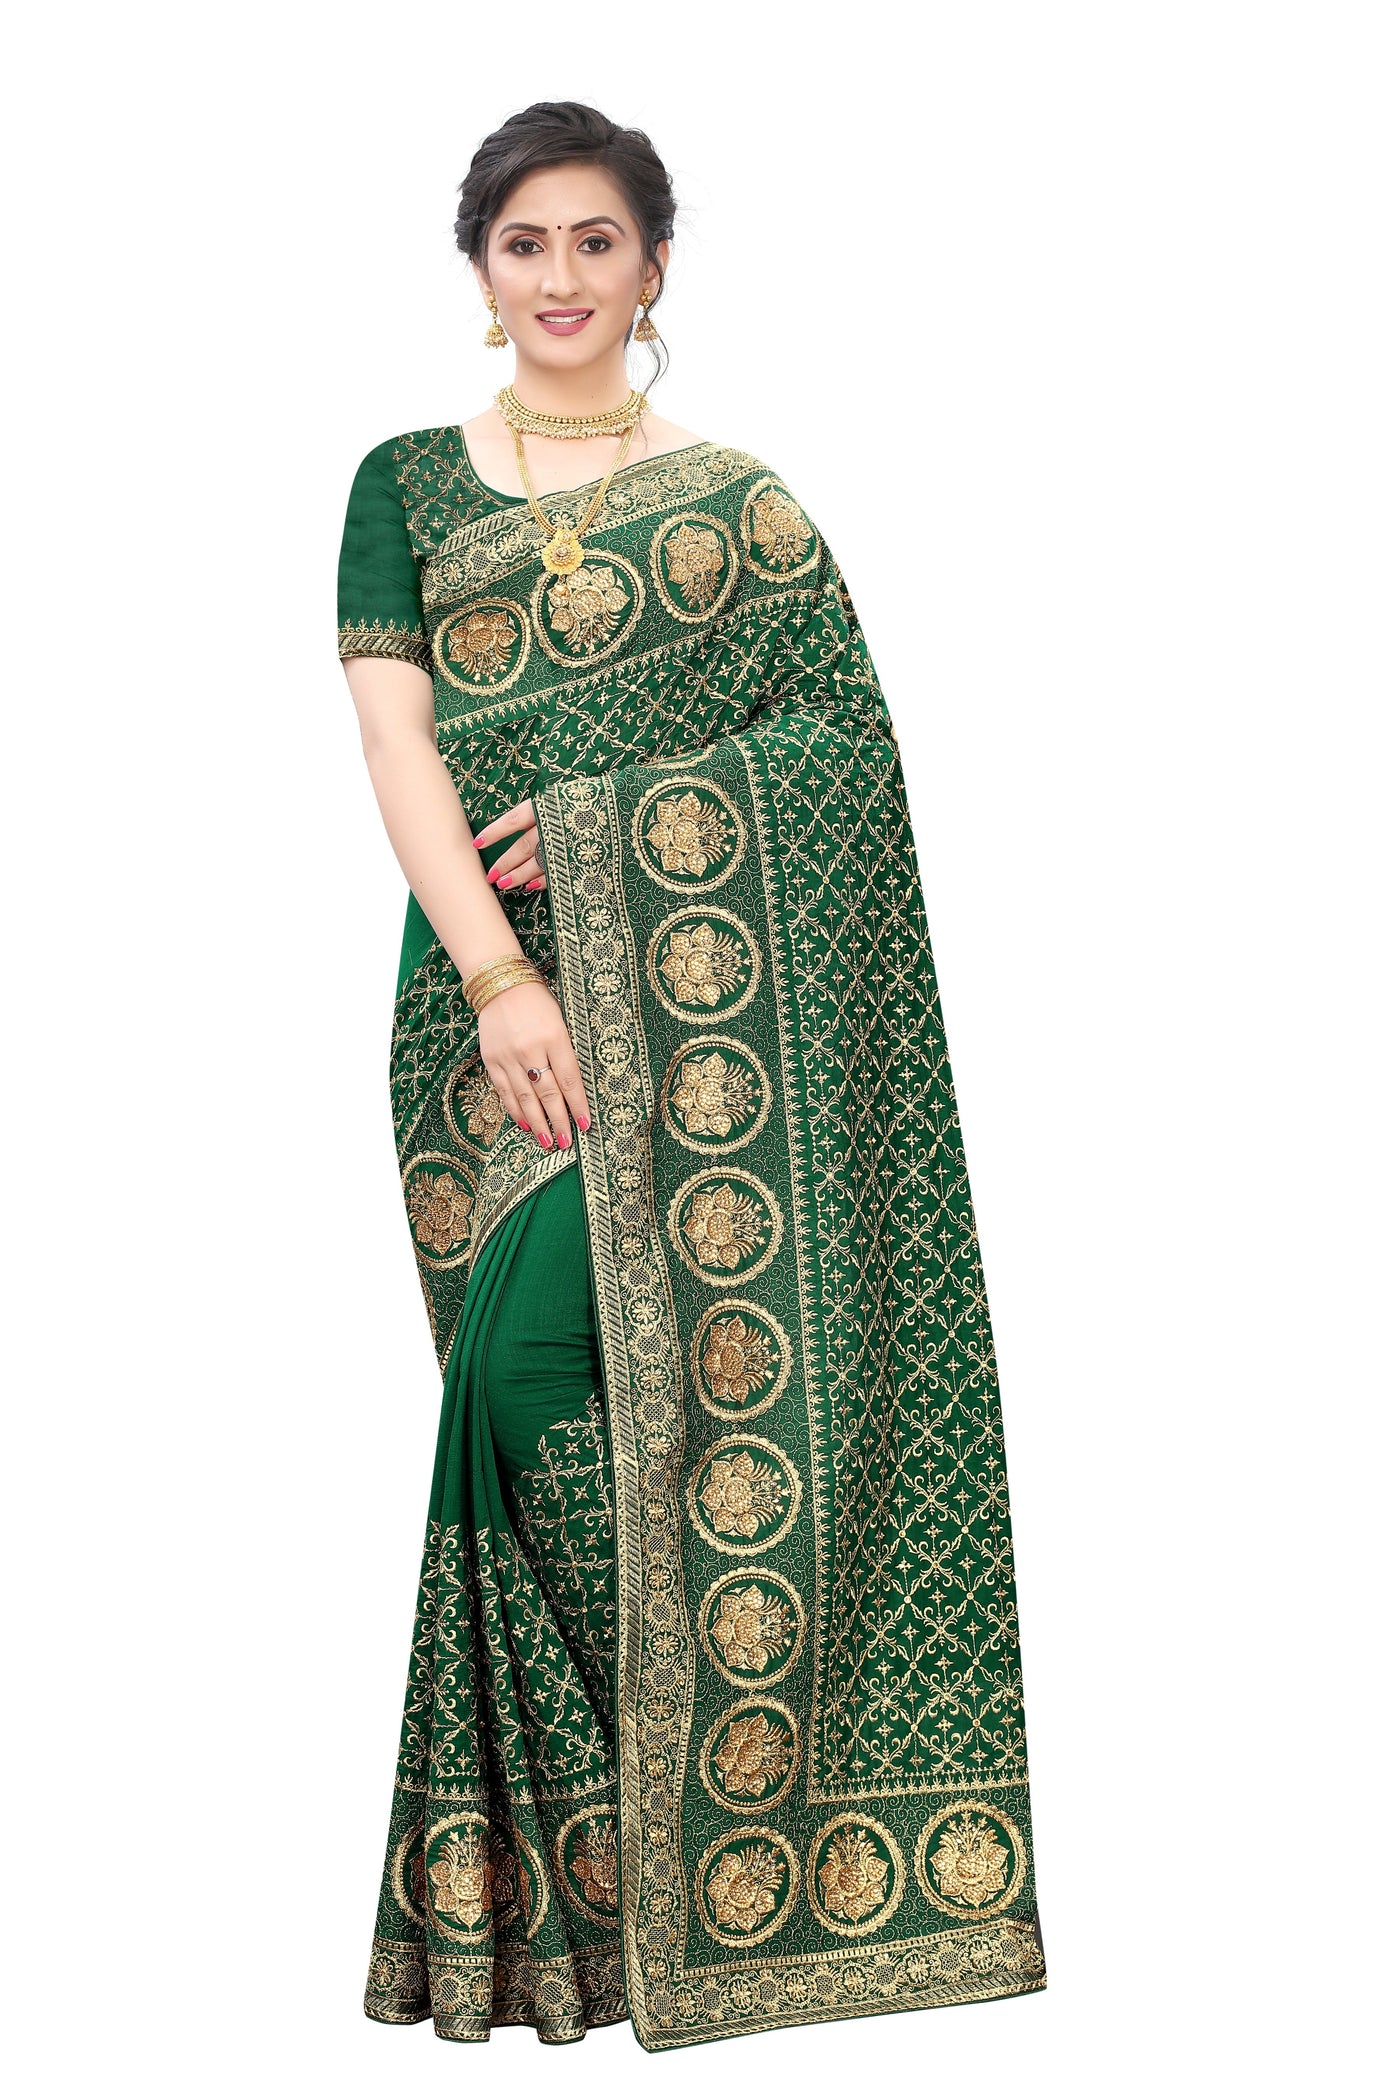 Vichitra Blooming Silk Green Saree With Blouse